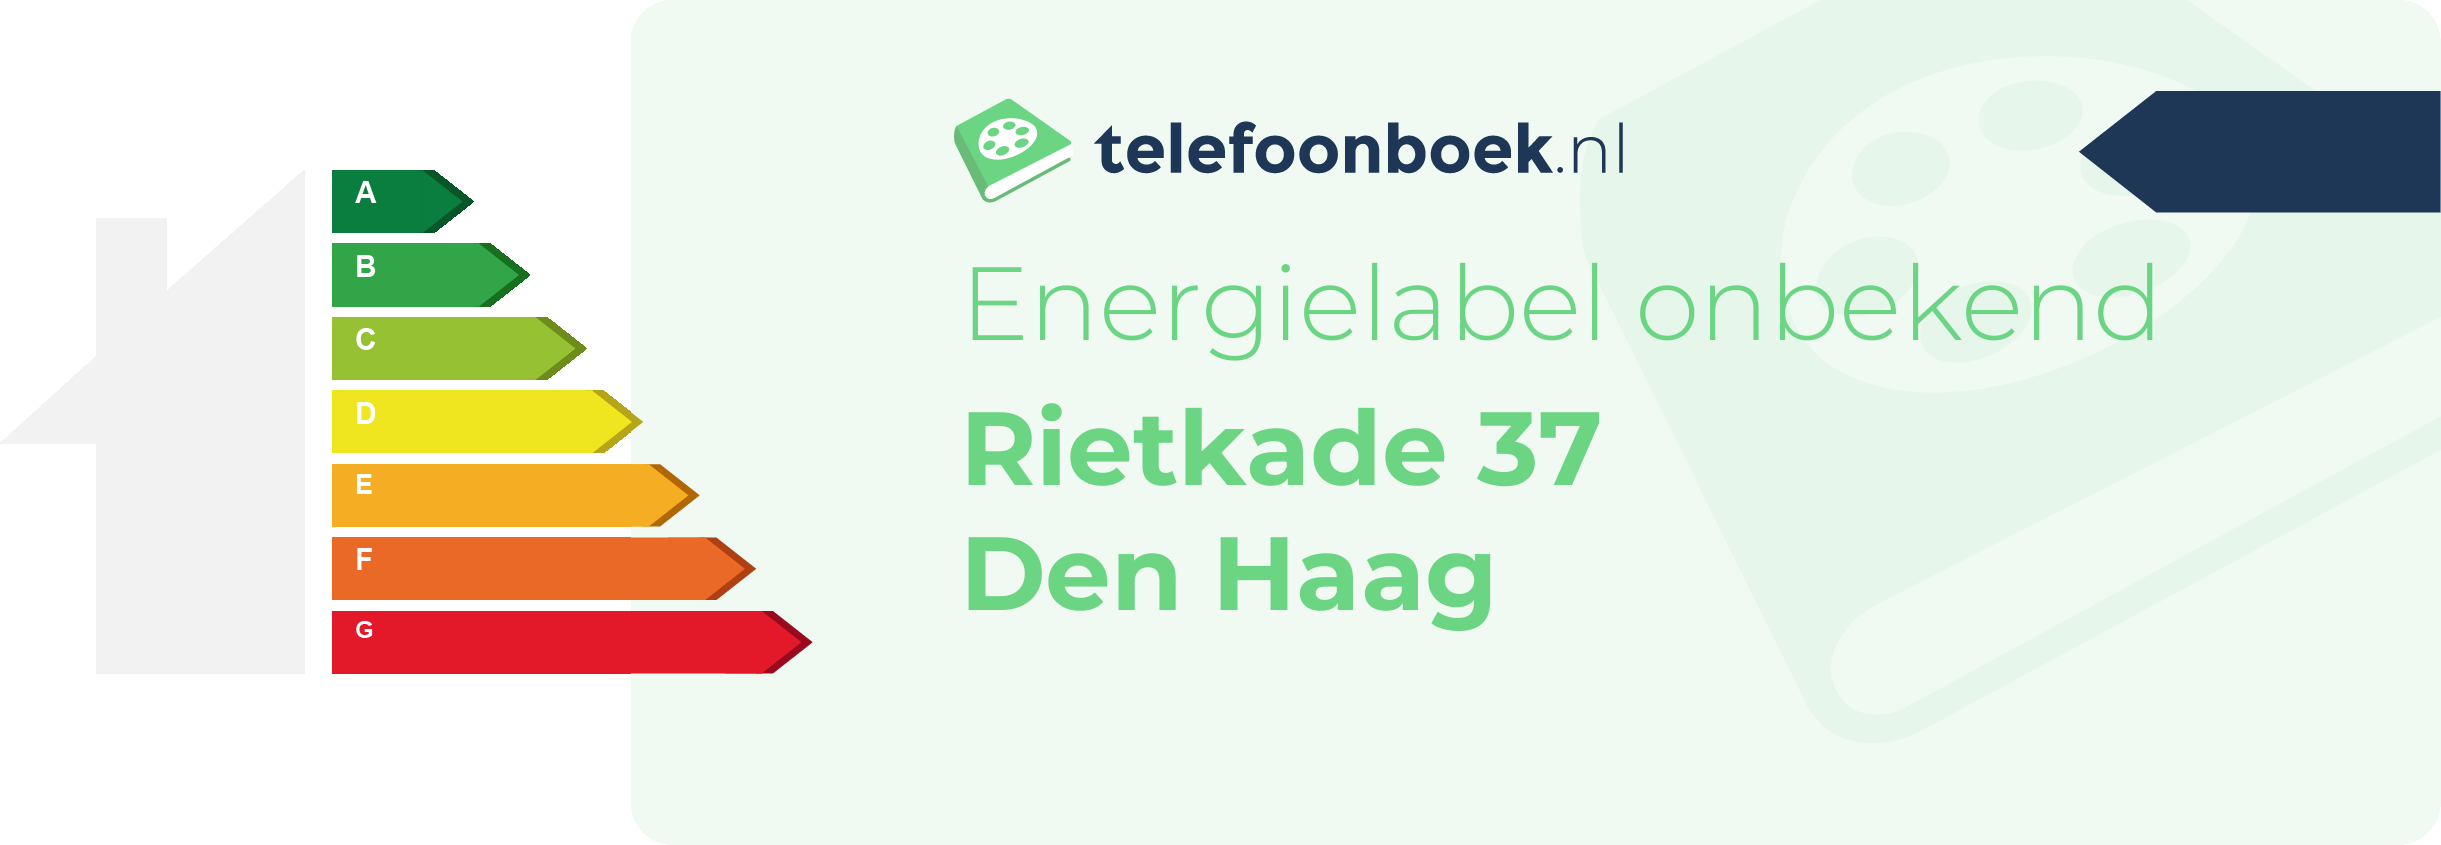 Energielabel Rietkade 37 Den Haag